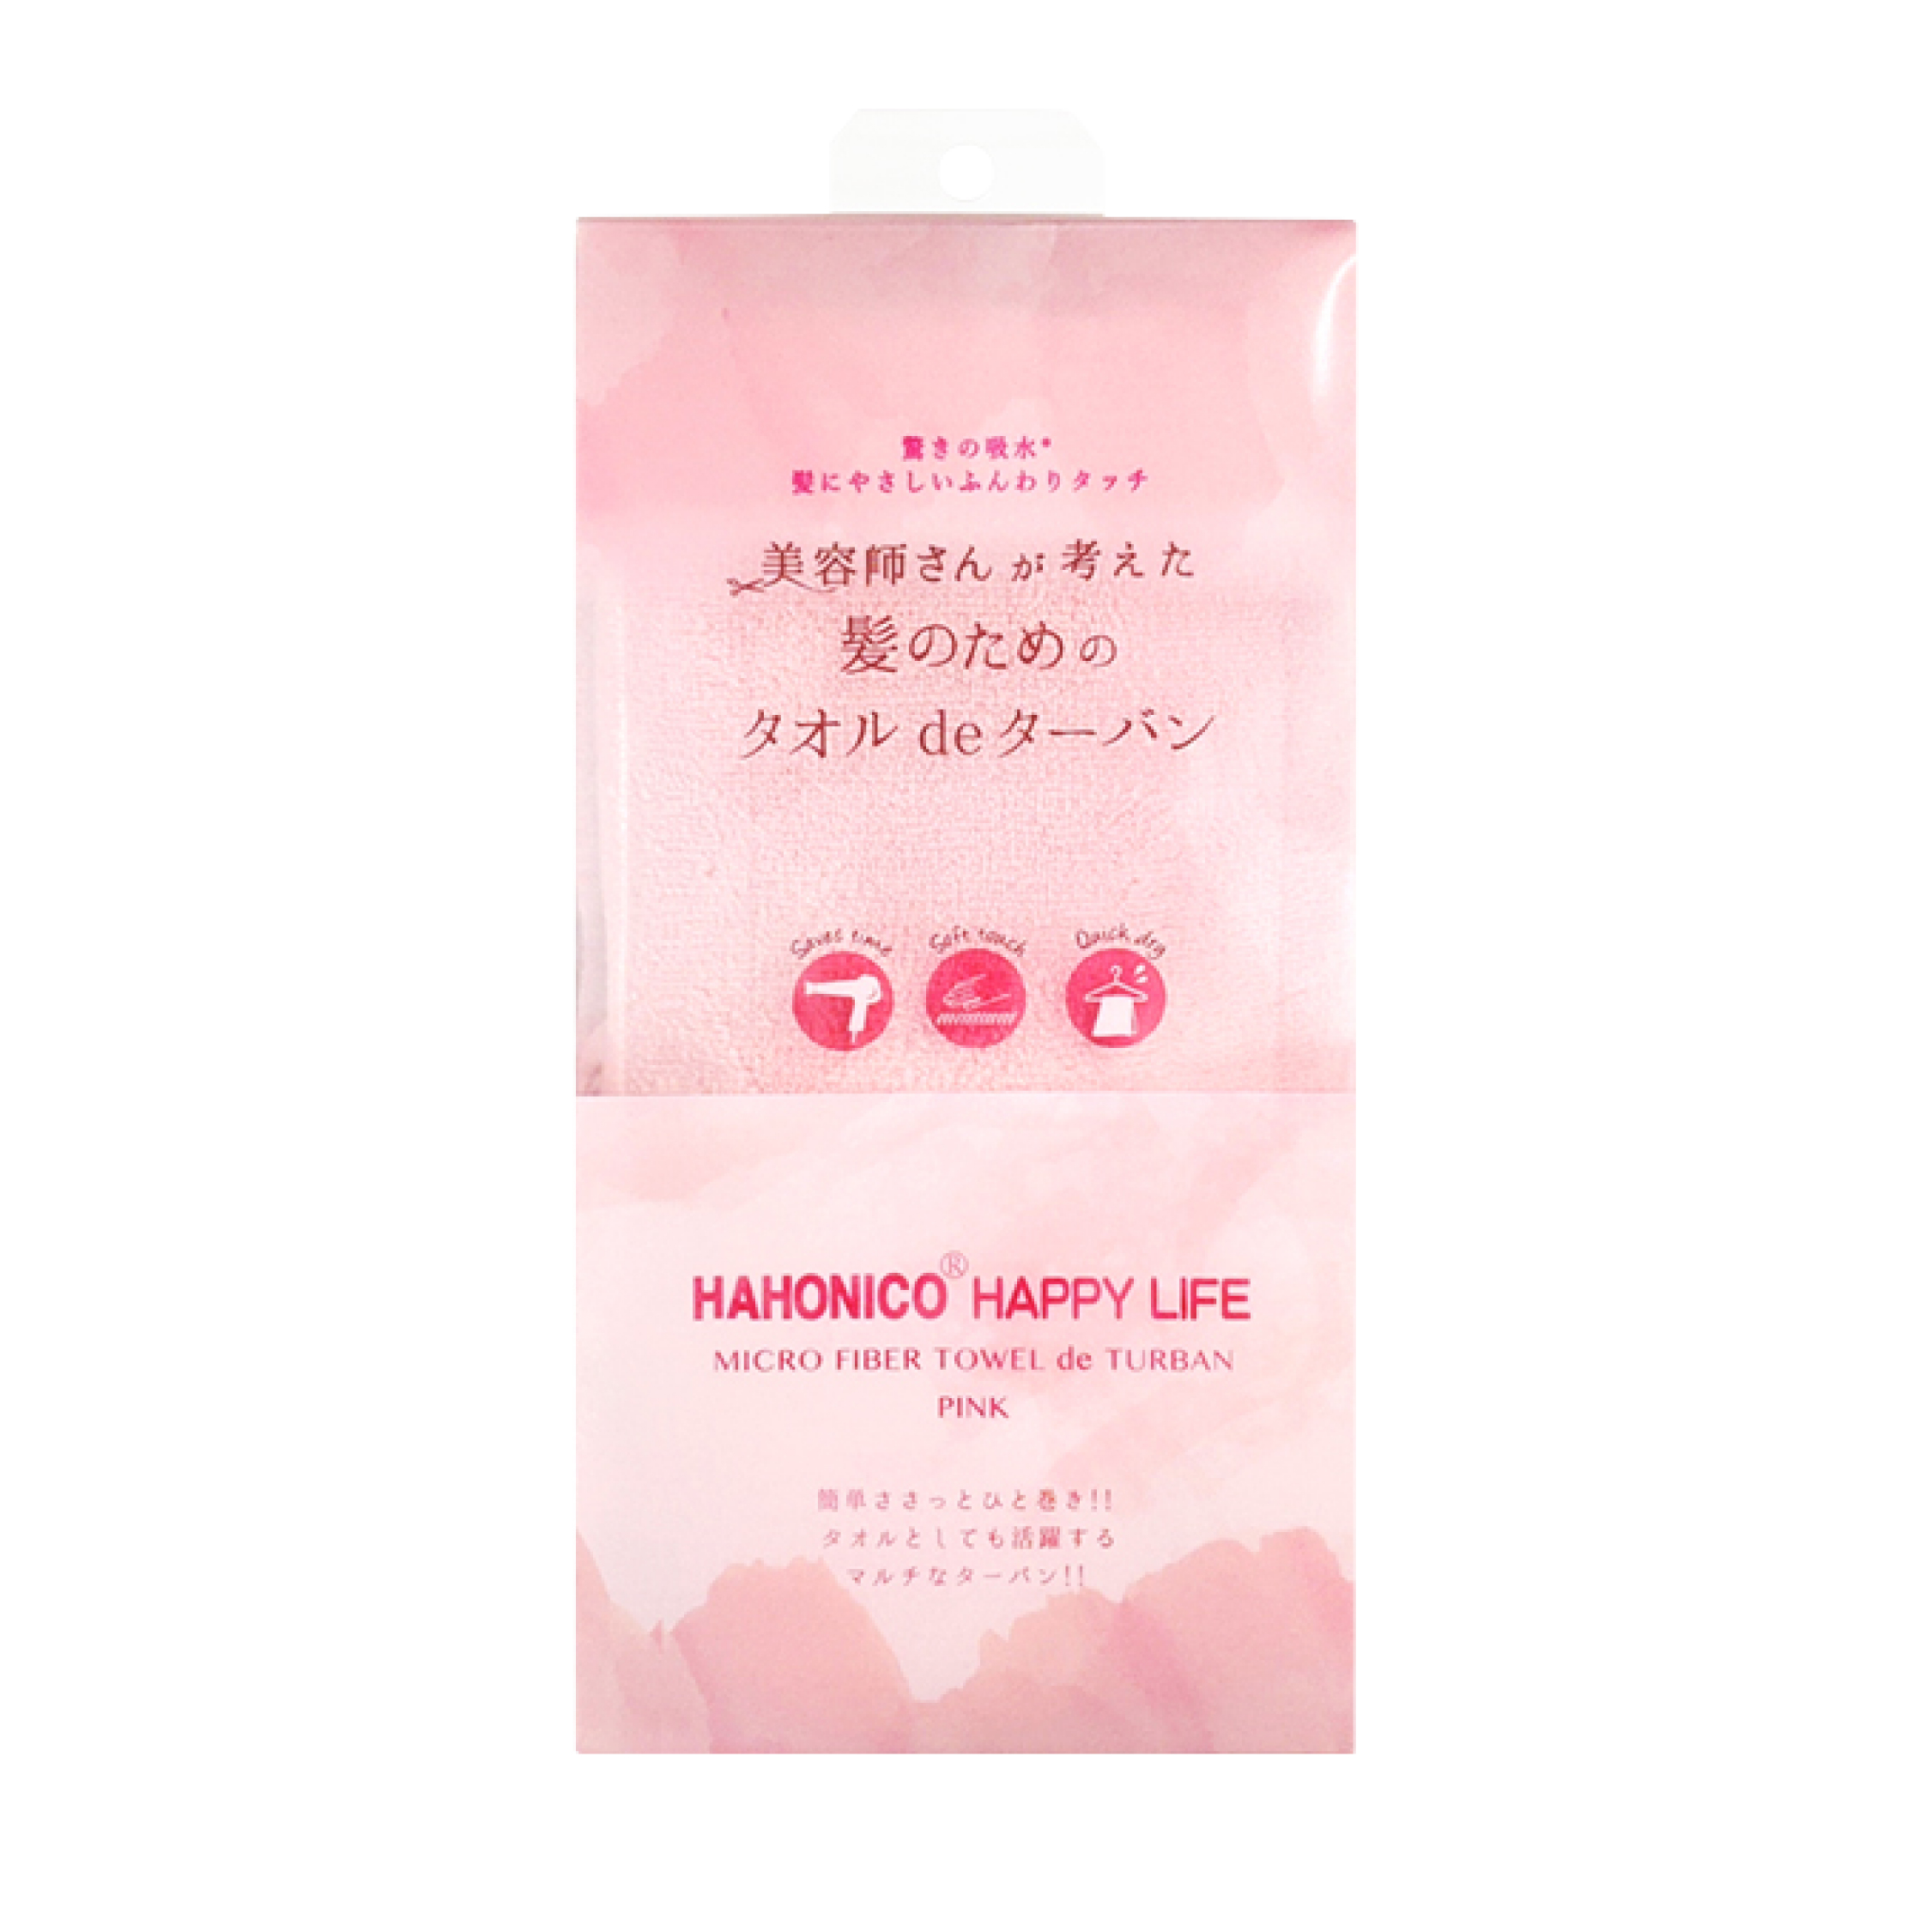 ハホニコ ヘアドライマイクロファイバータオル ピンク 株式会社HAHONICO 髪質改善のリーディングカンパニー